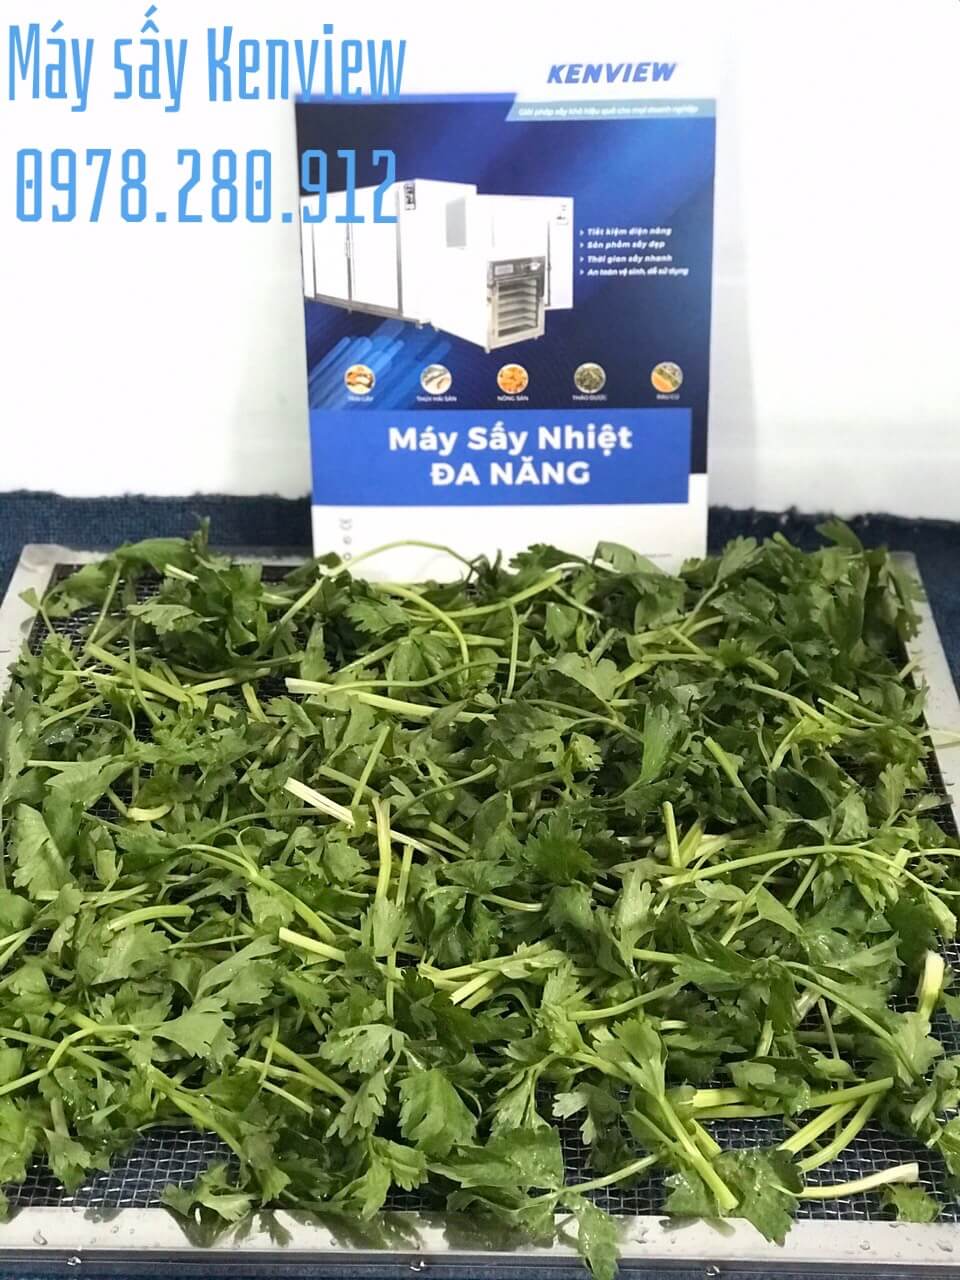 Máy sấy hoa quả Kenview tại Quảng Nam. Sấy tinh bột rau củ giữ màu xanh.